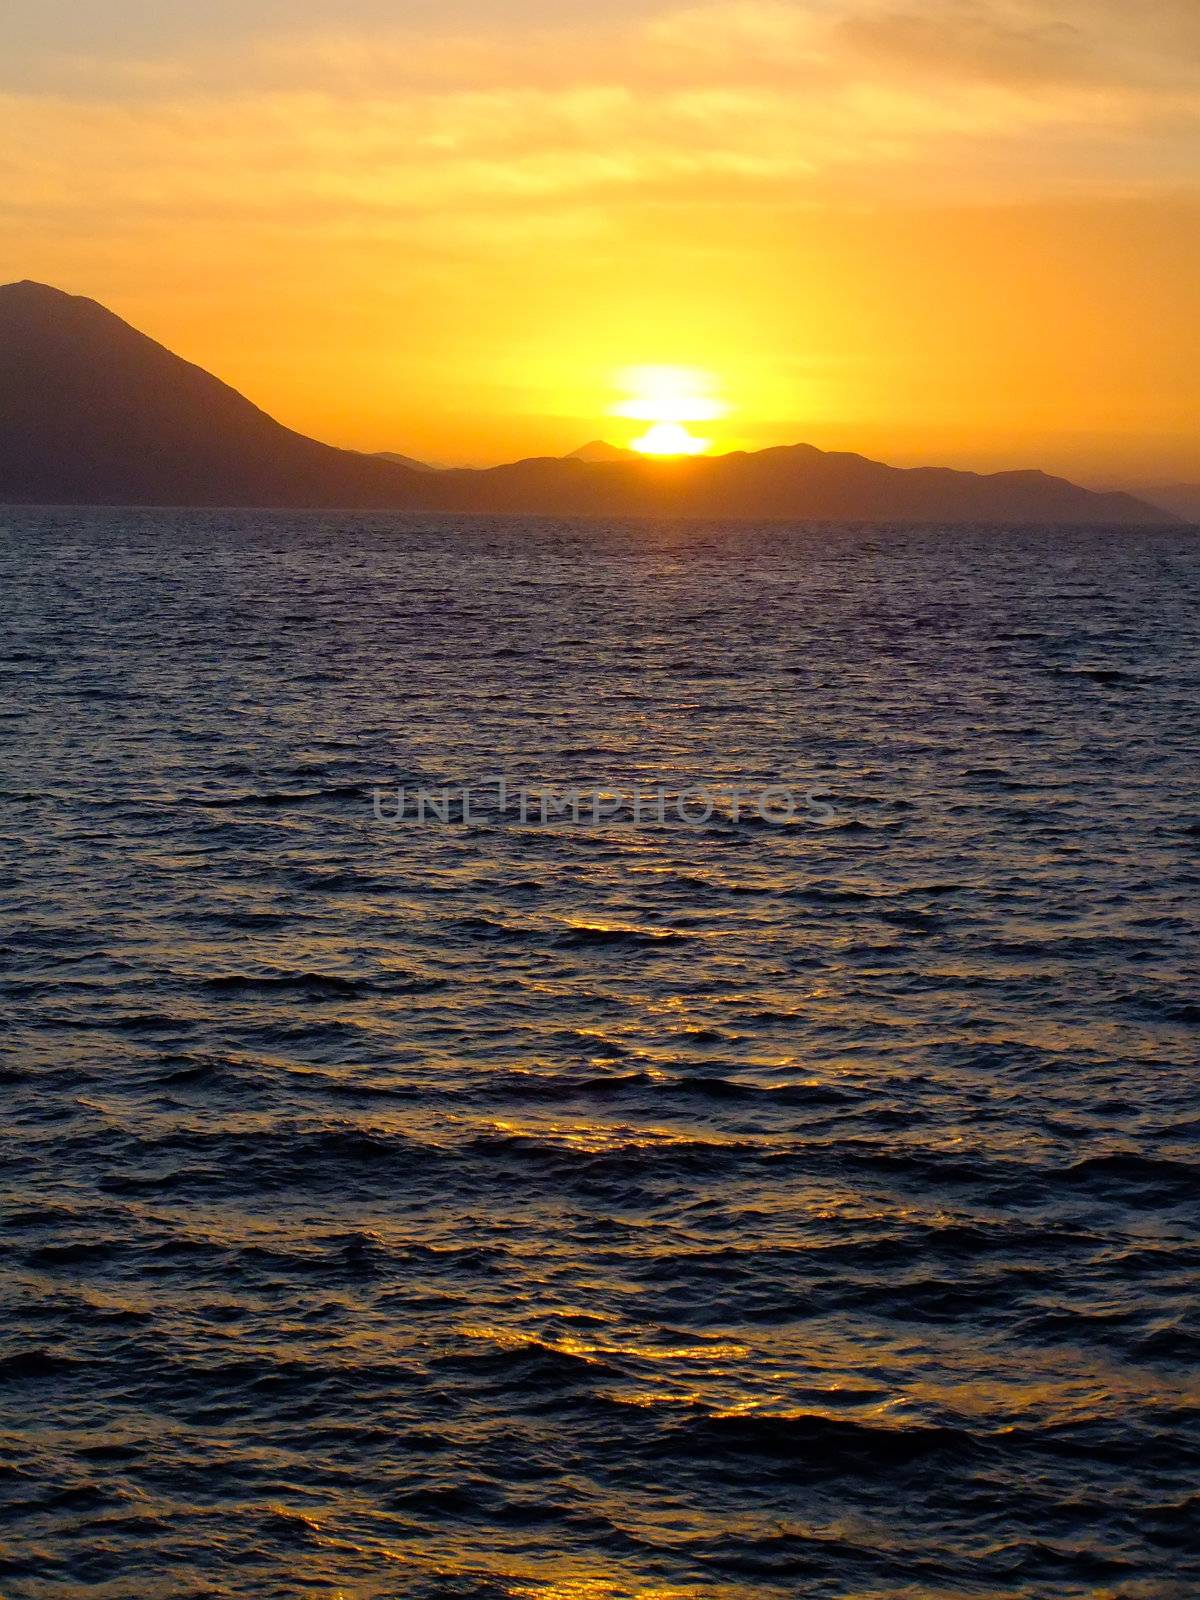 Sunrise near Hvar island, Adriatic sea, Croatia